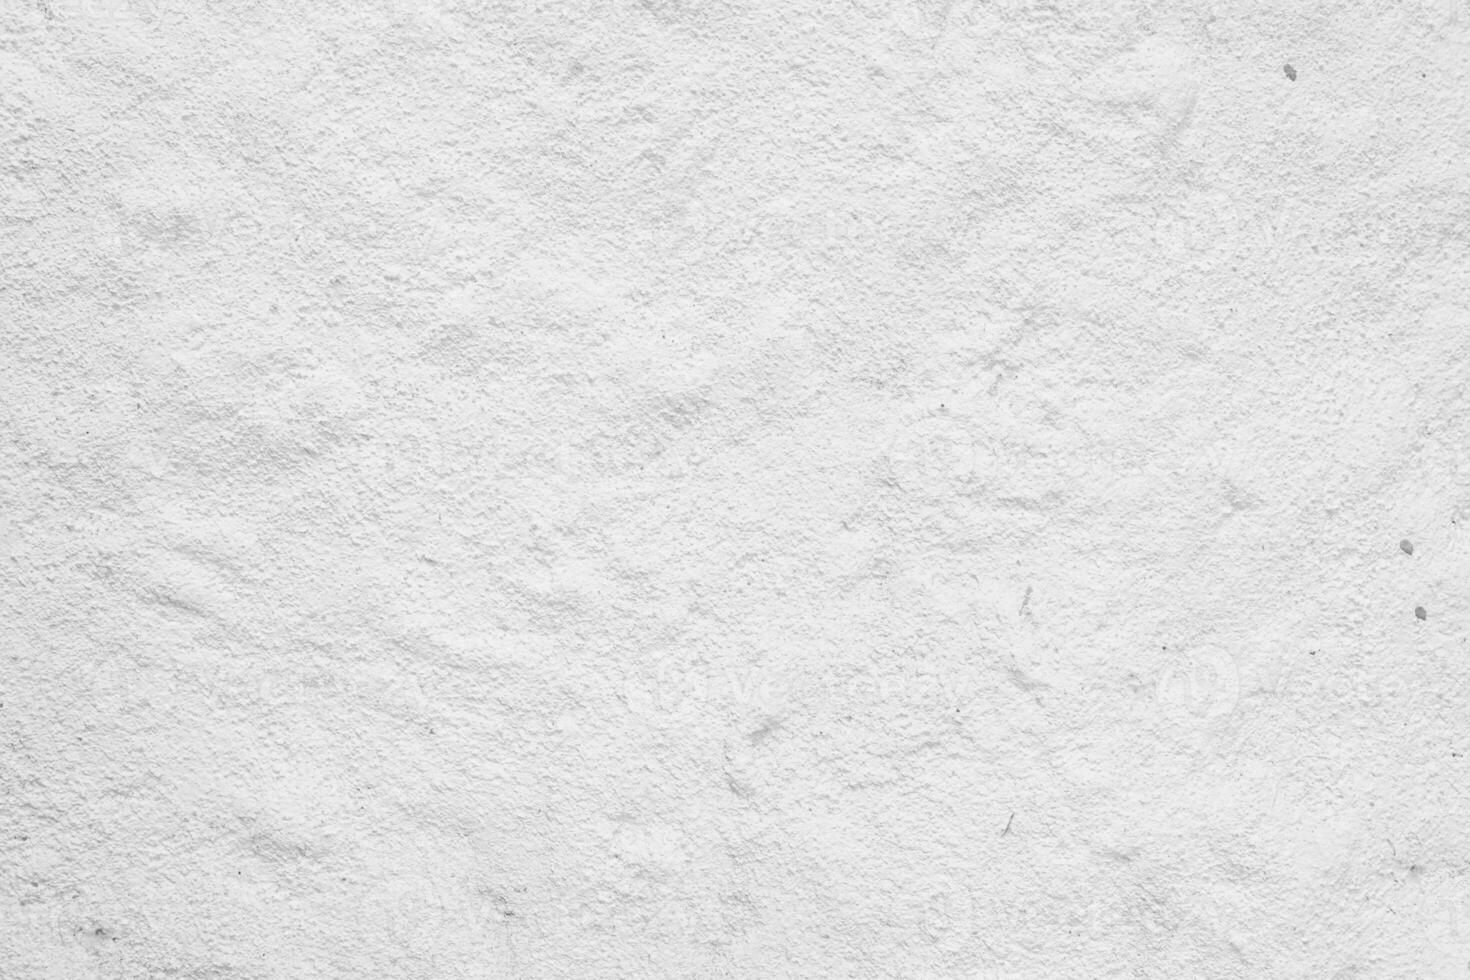 blanco cemento textura con natural modelo para antecedentes. foto